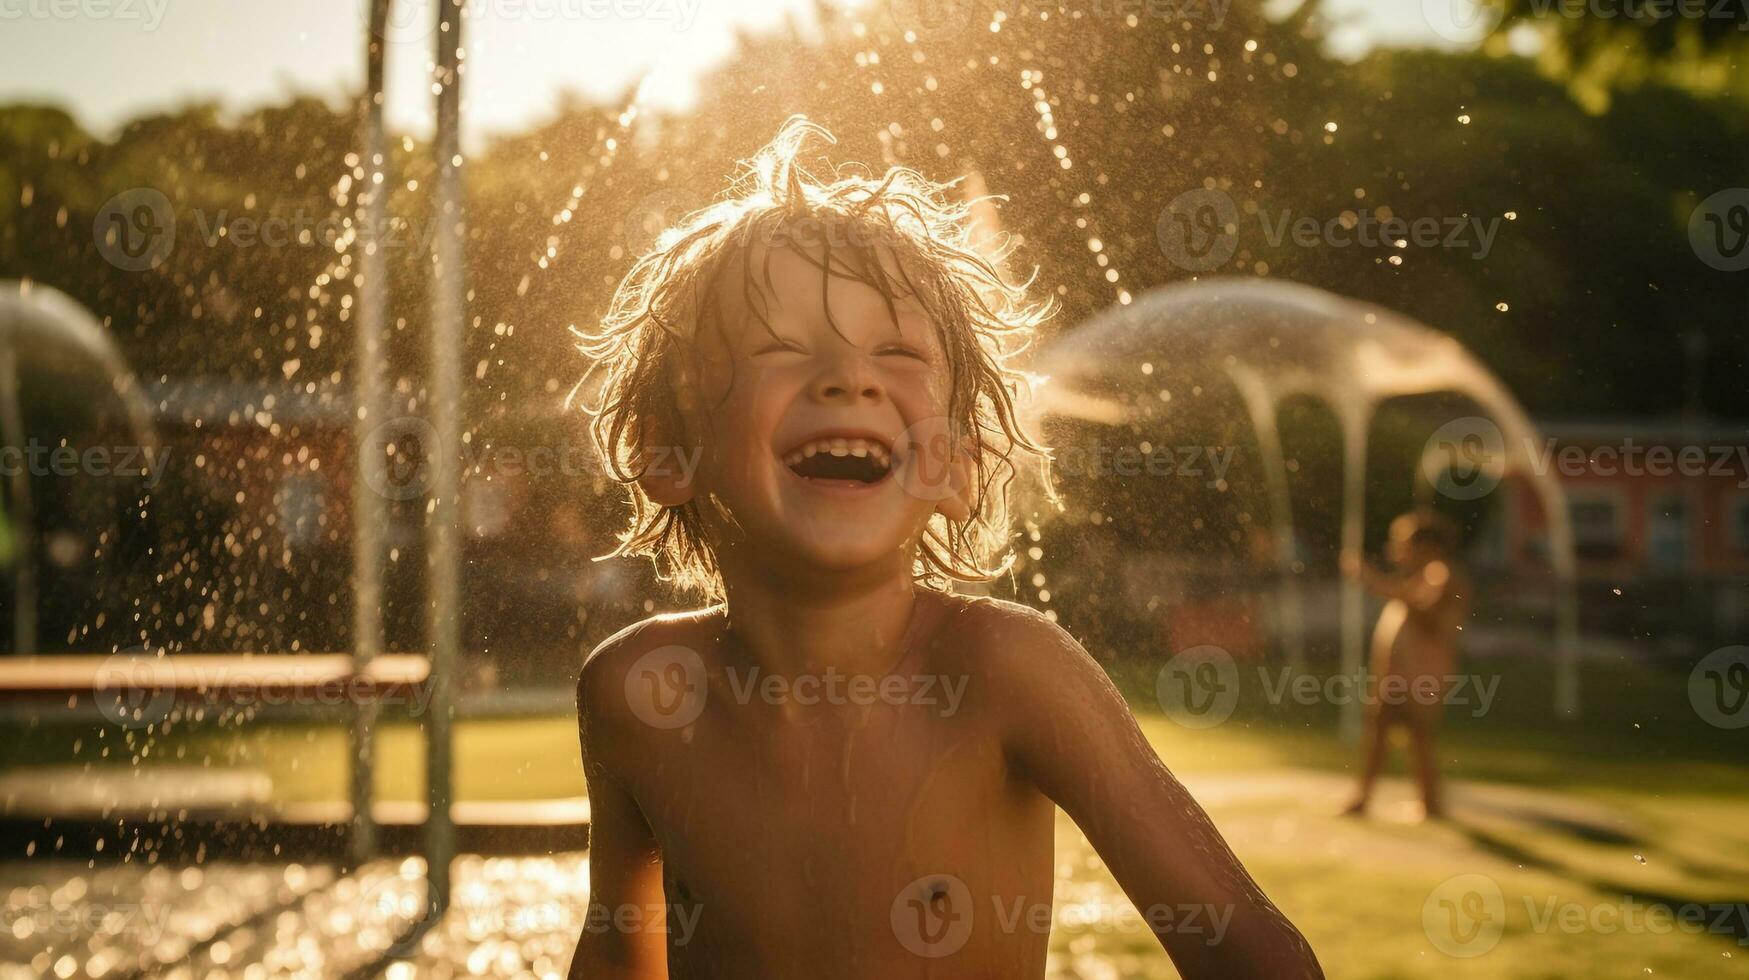 een kind lachend net zo ze Speel in een park, mentaal Gezondheid afbeeldingen, fotorealistisch illustratie foto